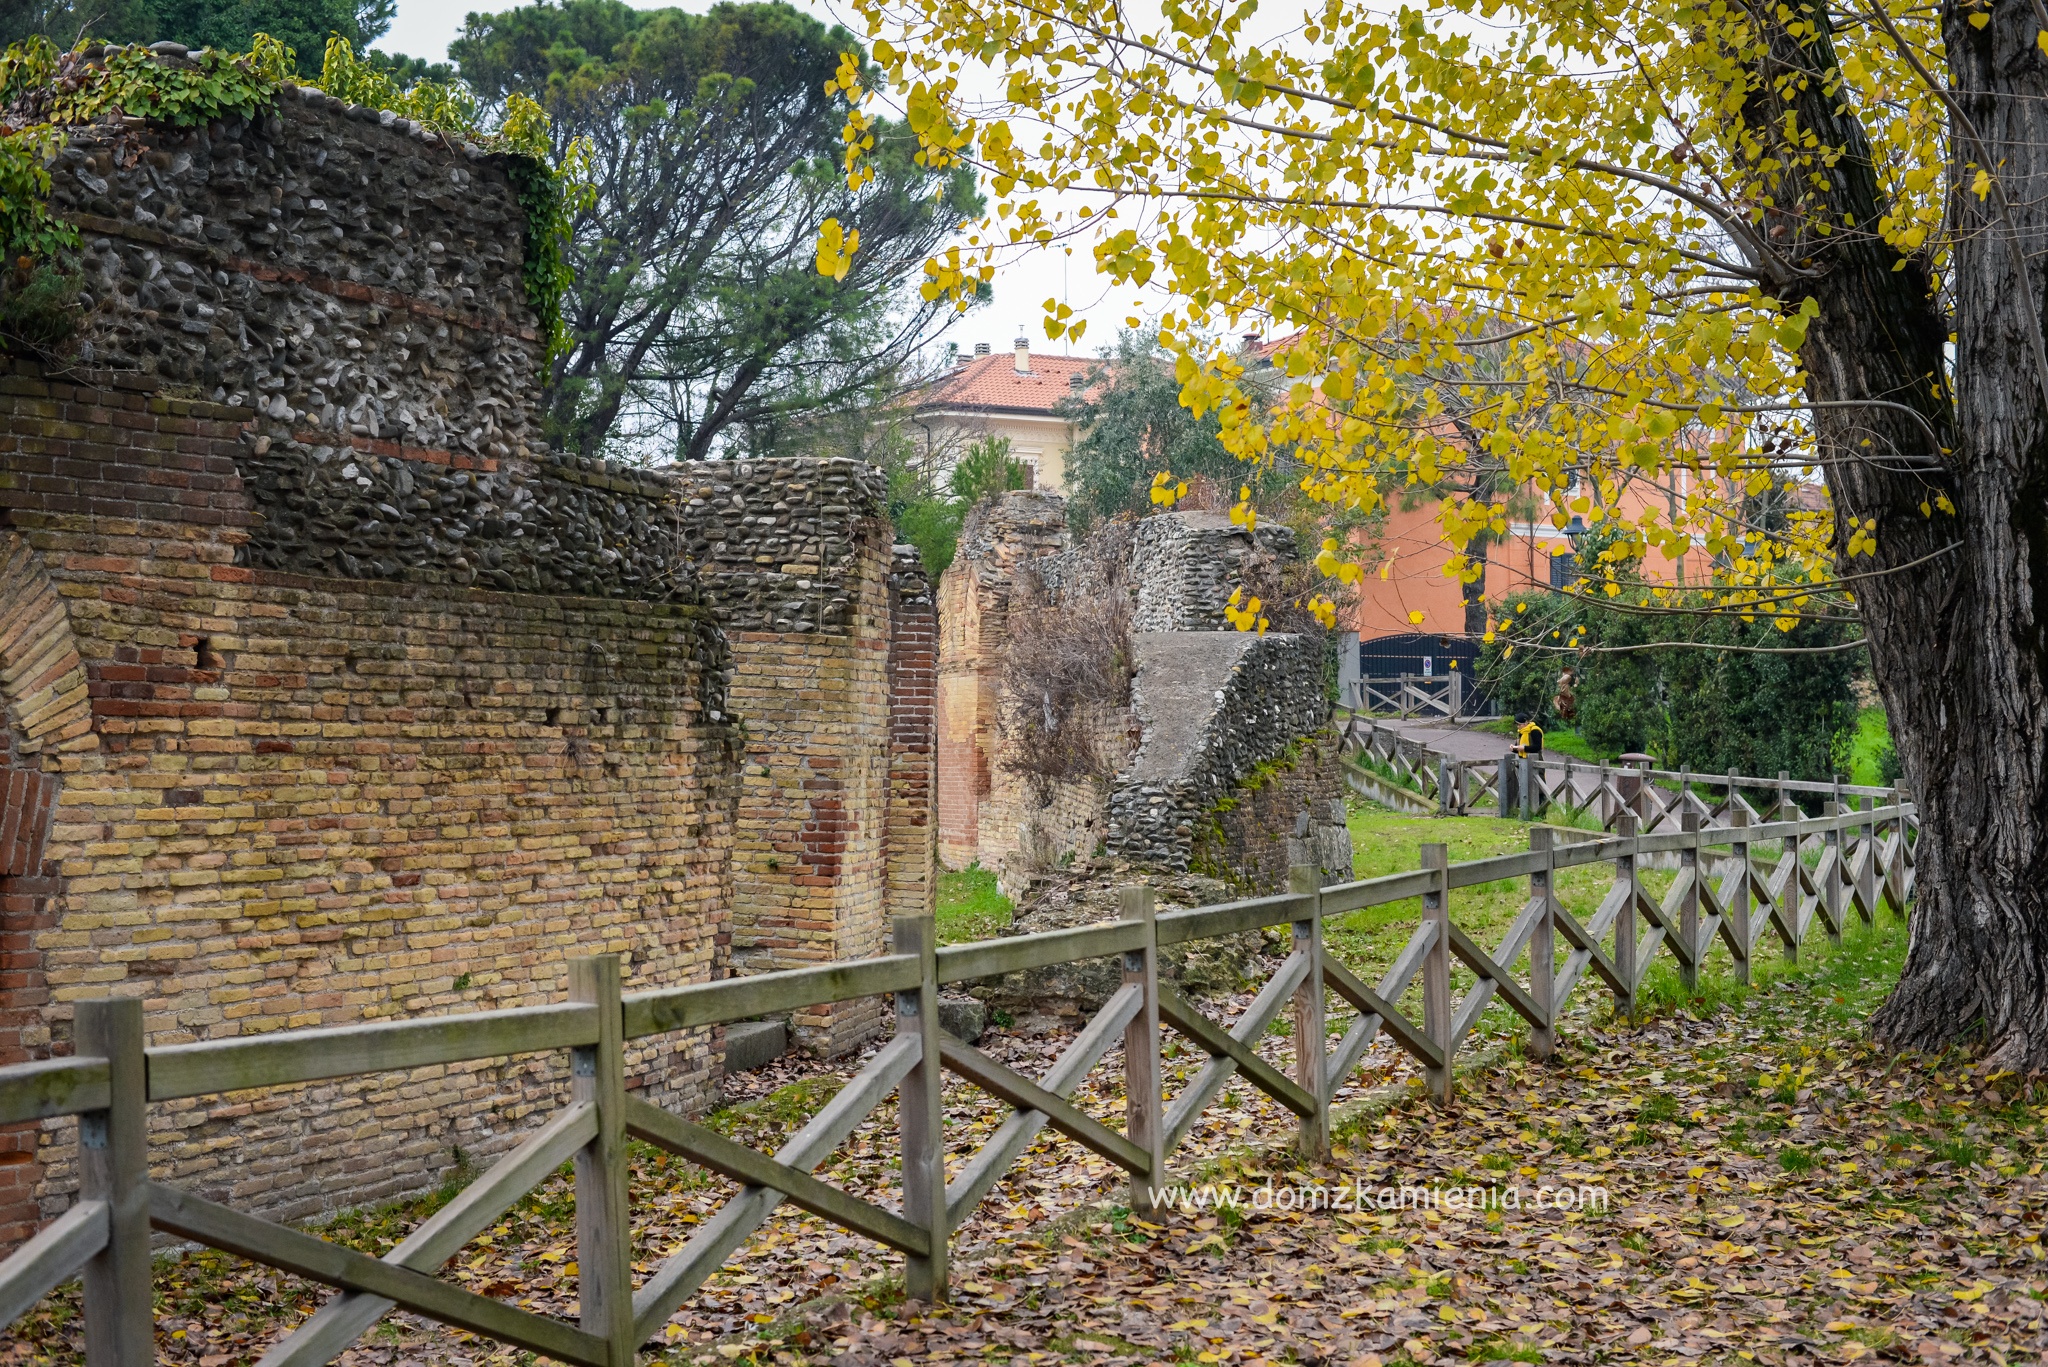 Dom z Kamienia, Rimini, blog o życiu w Toskanii